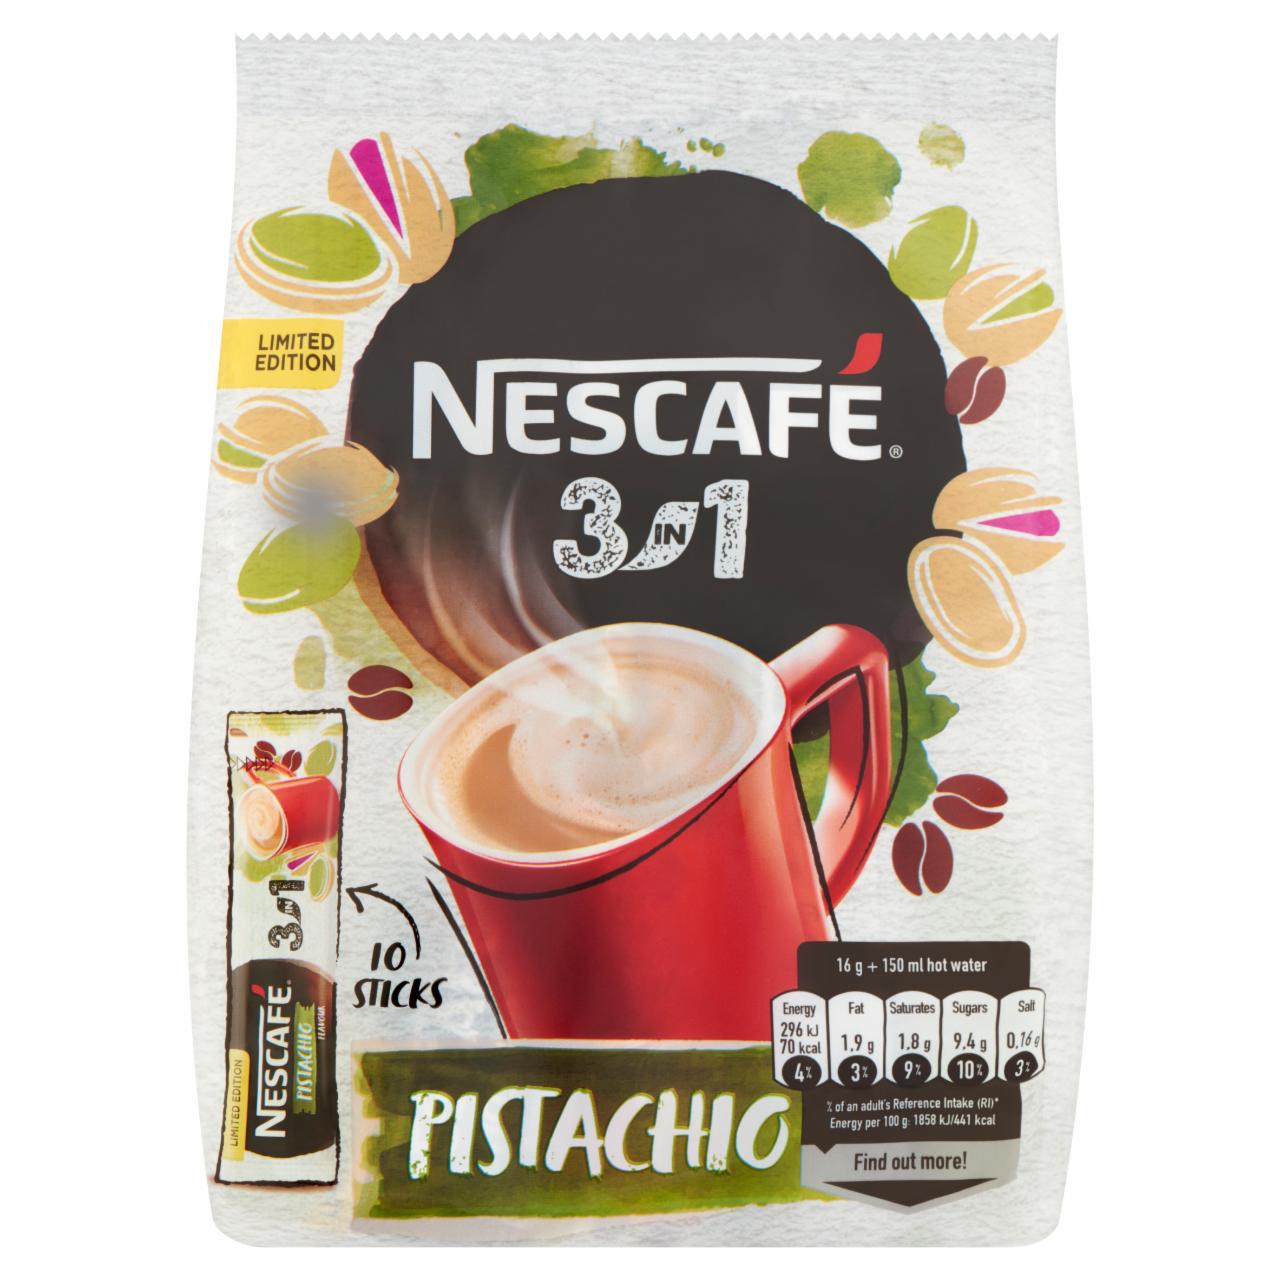 Képek - Nescafé 3in1 Pistachio pisztácia ízű azonnal oldódó kávéspecialitás 10 db 160 g